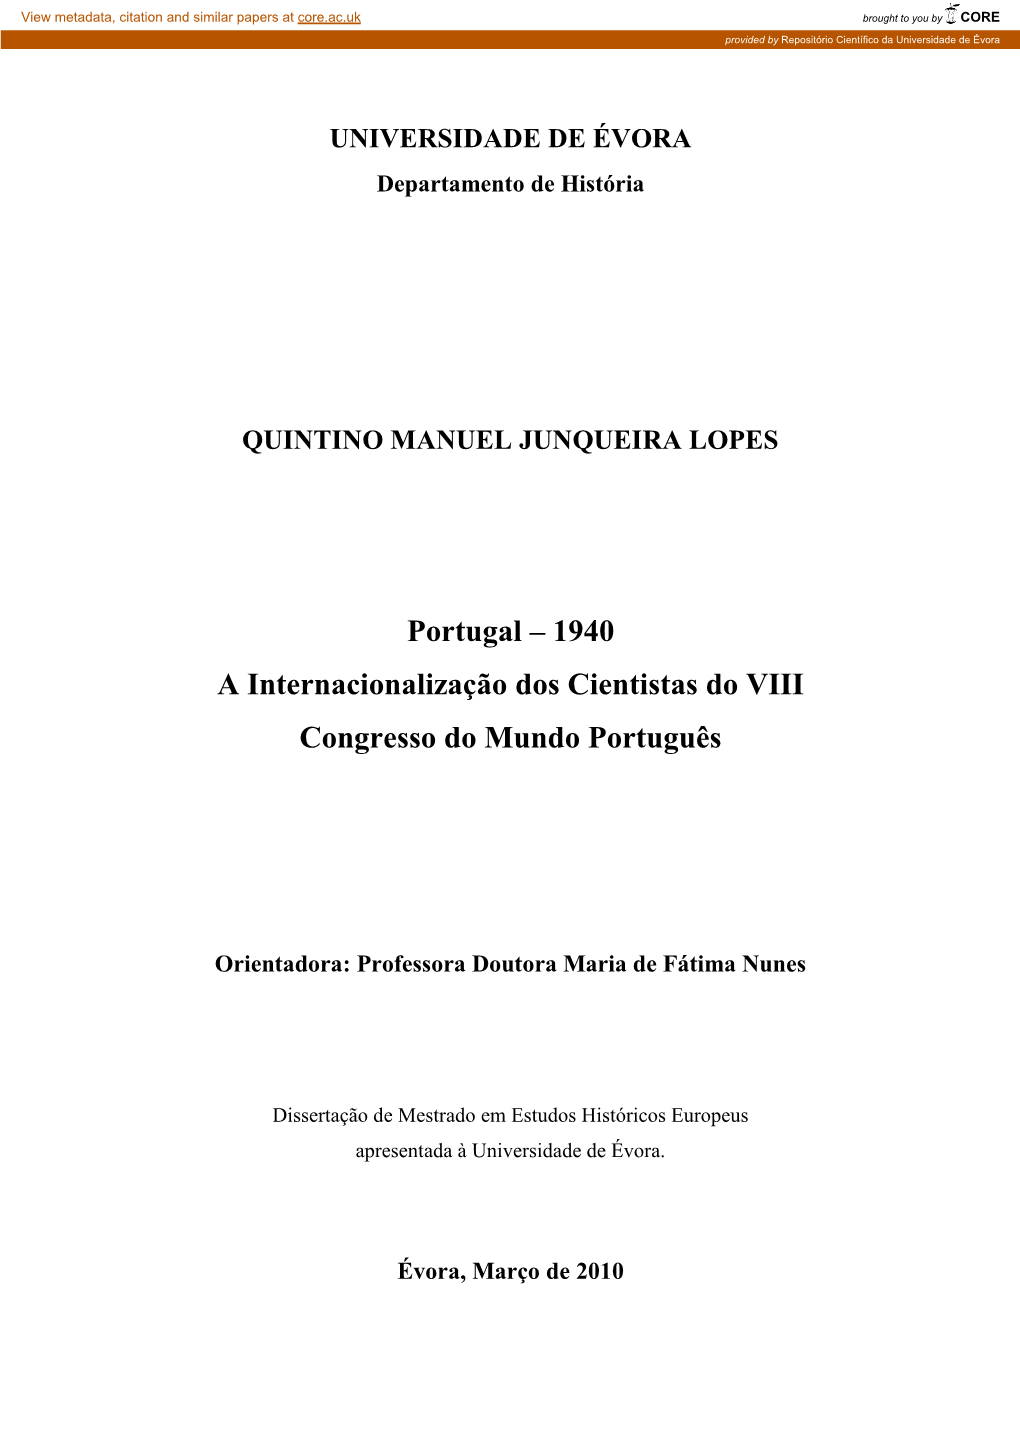 Portugal – 1940 a Internacionalização Dos Cientistas Do VIII Congresso Do Mundo Português